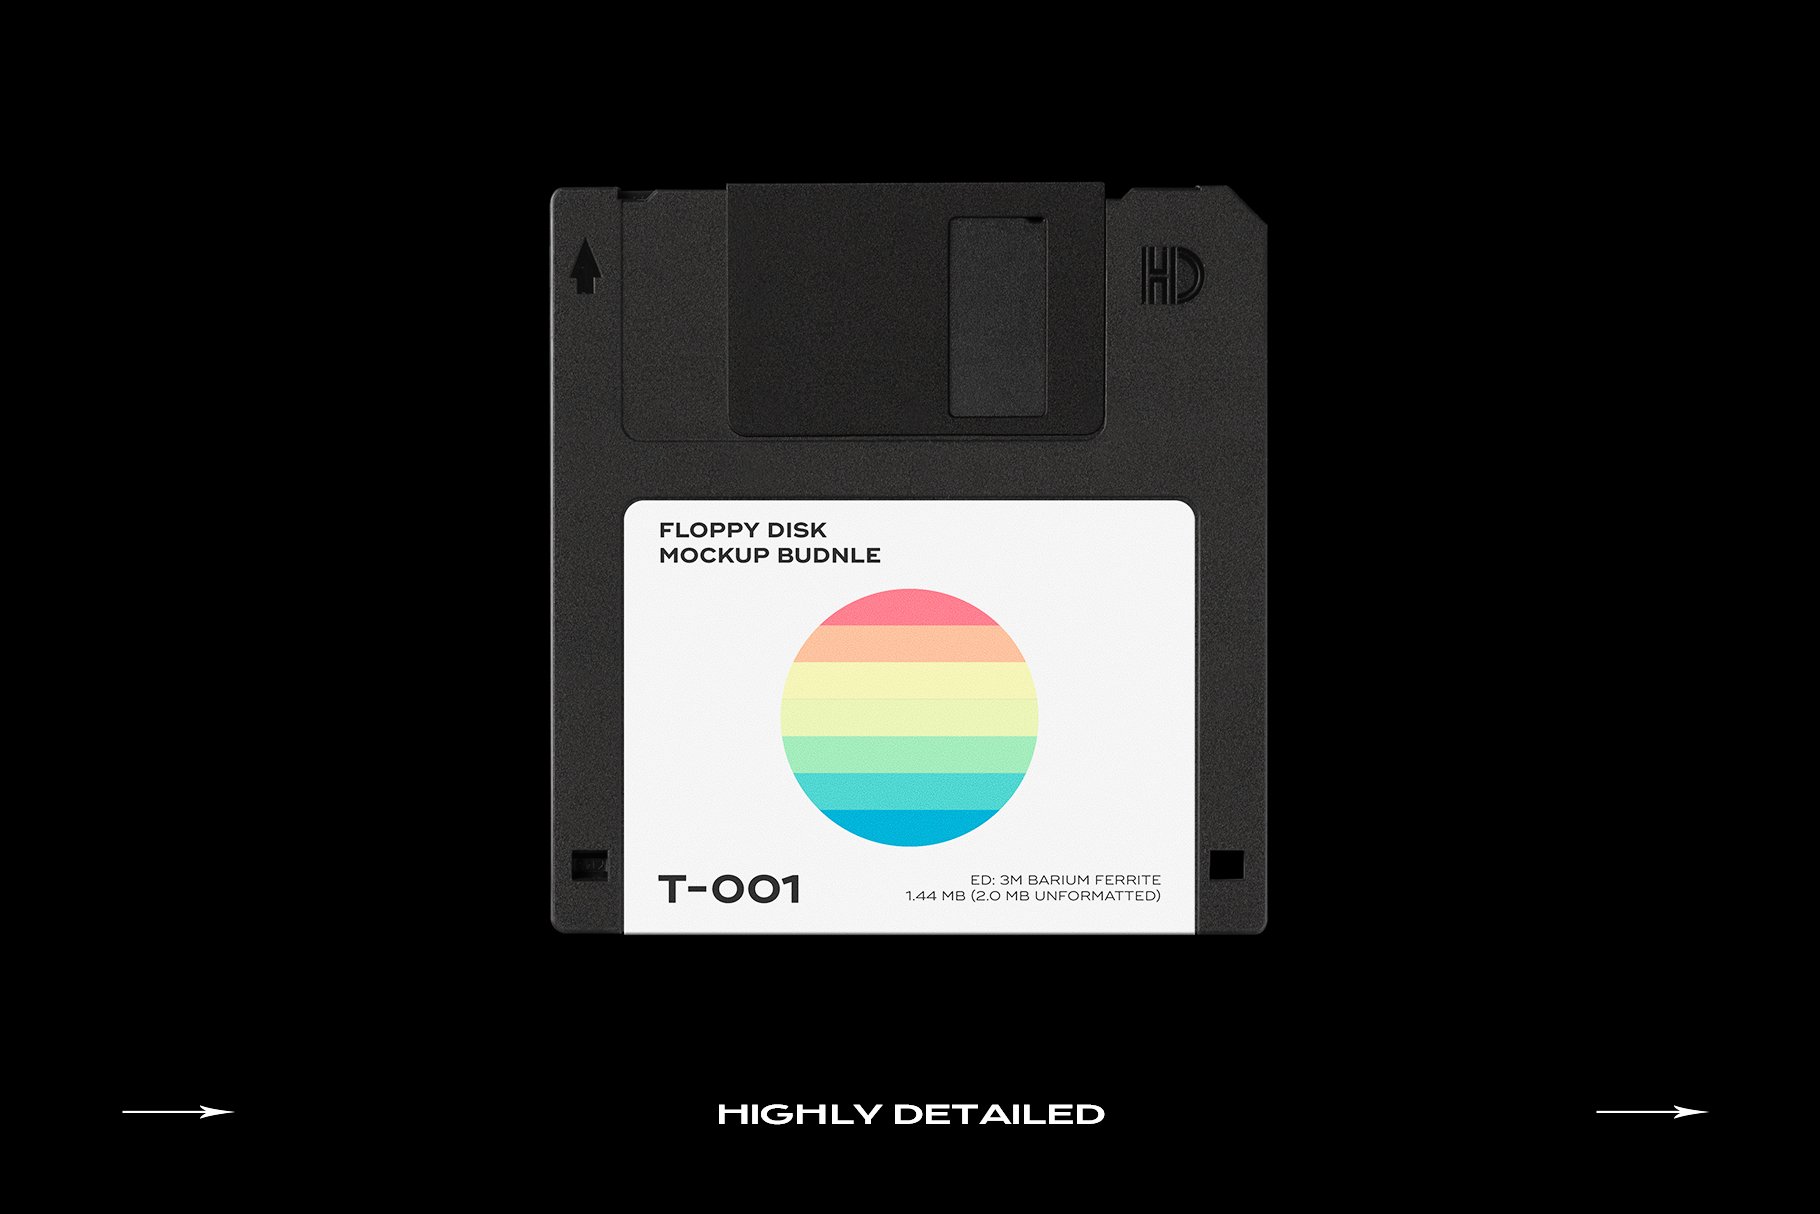 潮流复古软盘模型PSD模板包 Floppy Disk Mockup Template Bundle（3995）图层云19